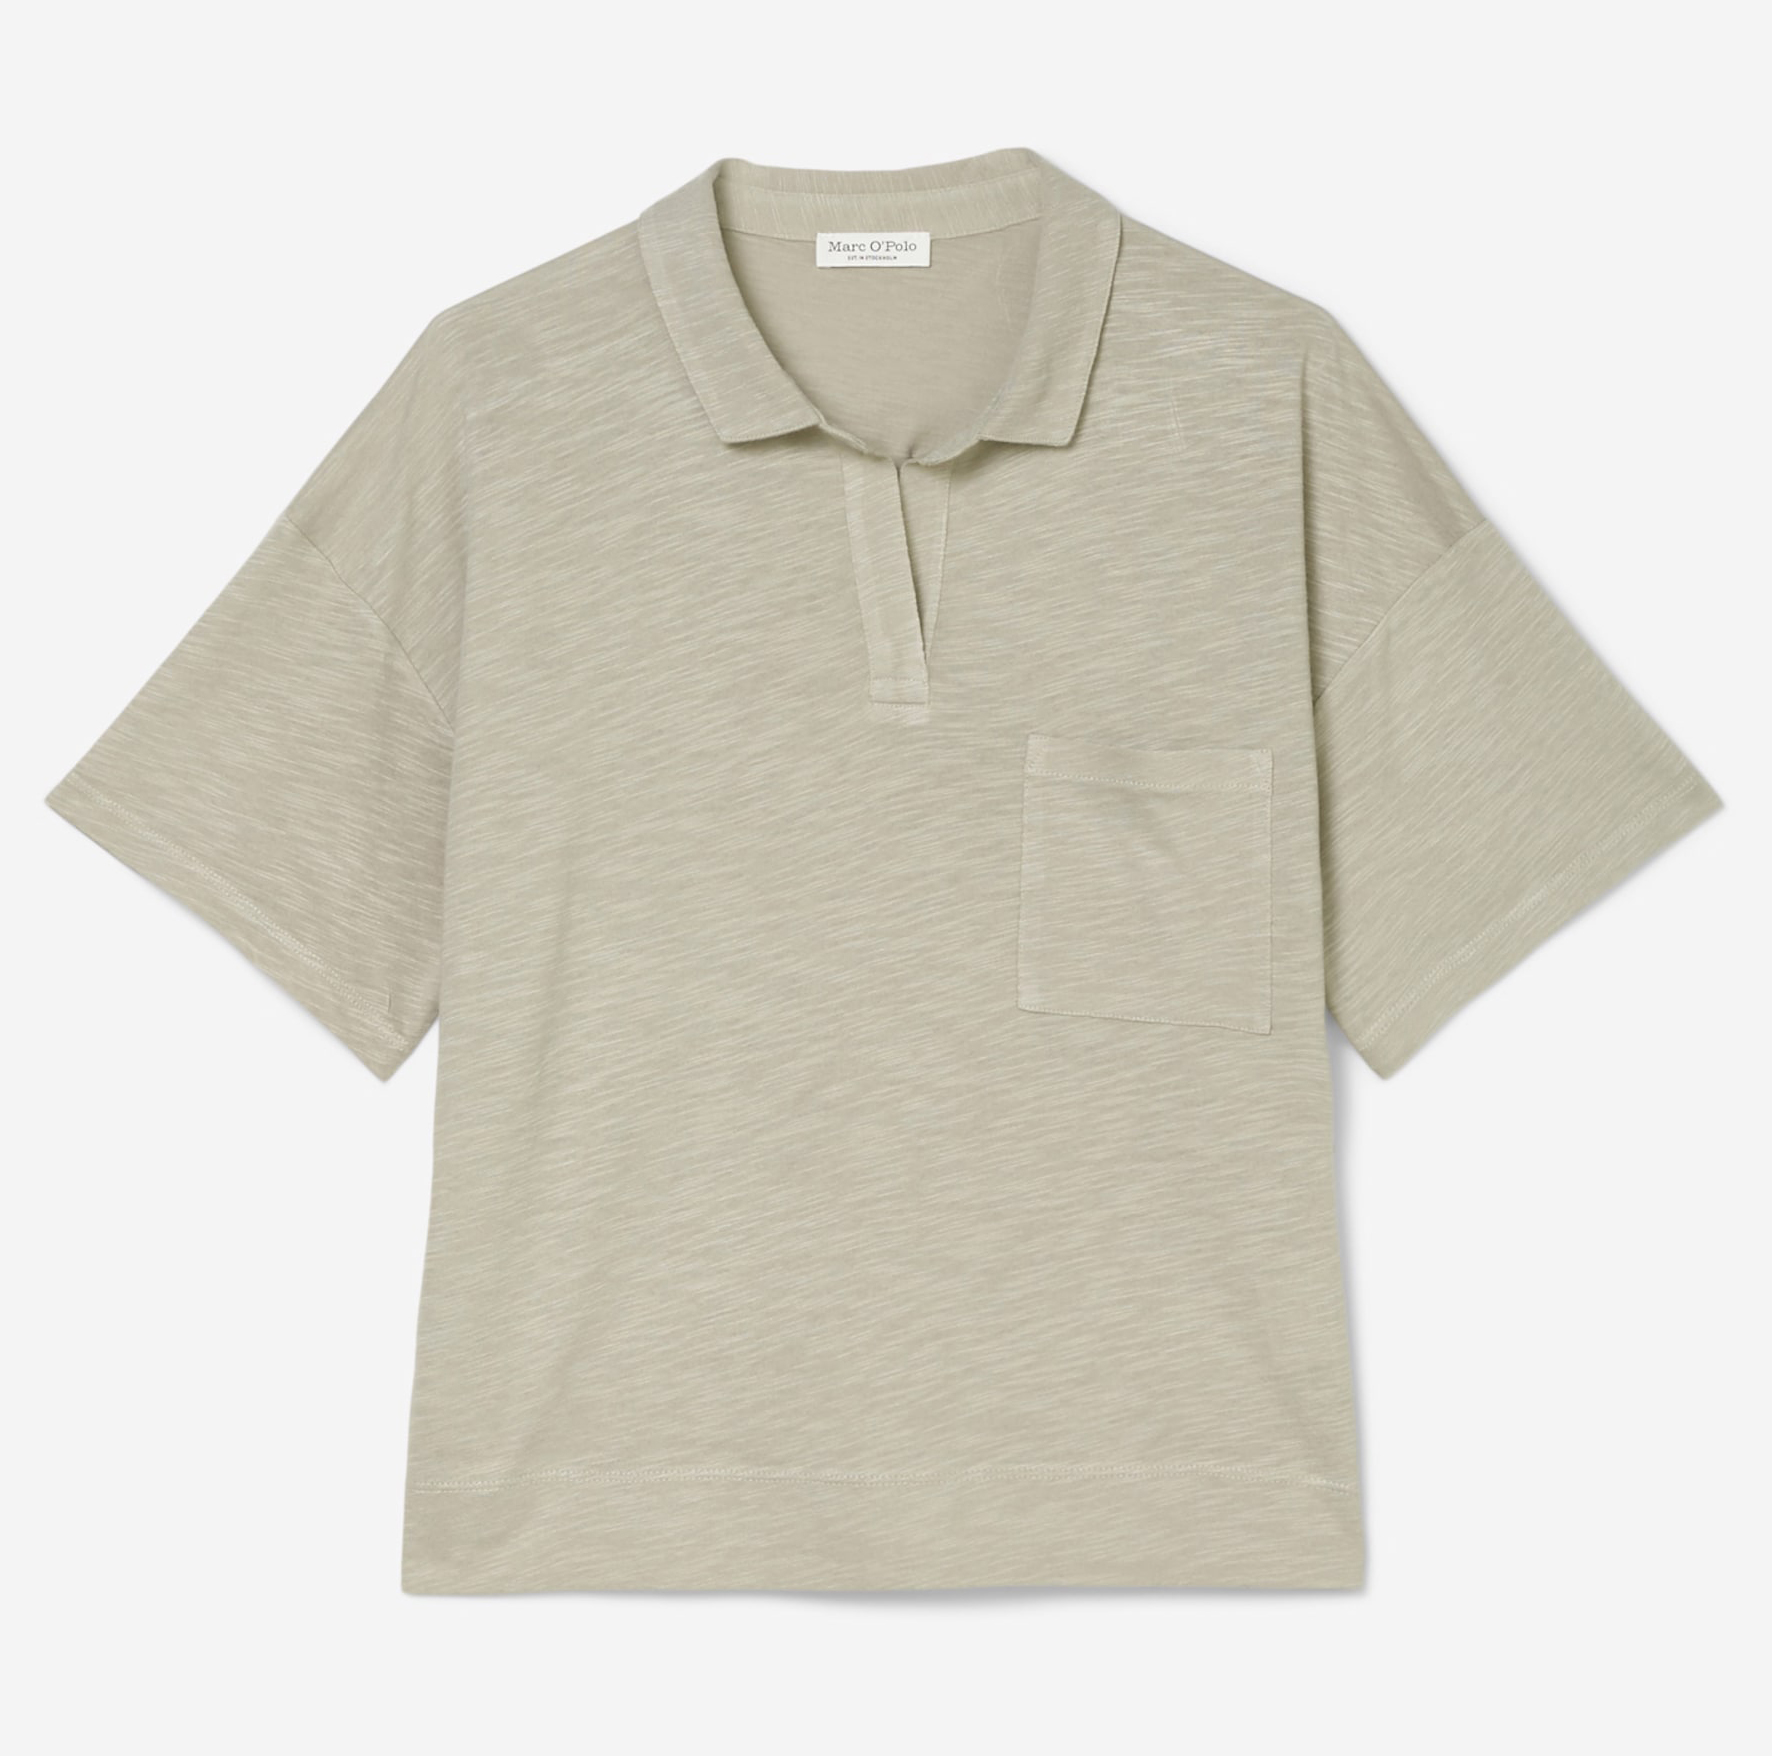 Polo-shirt, short sleeve, pocket at